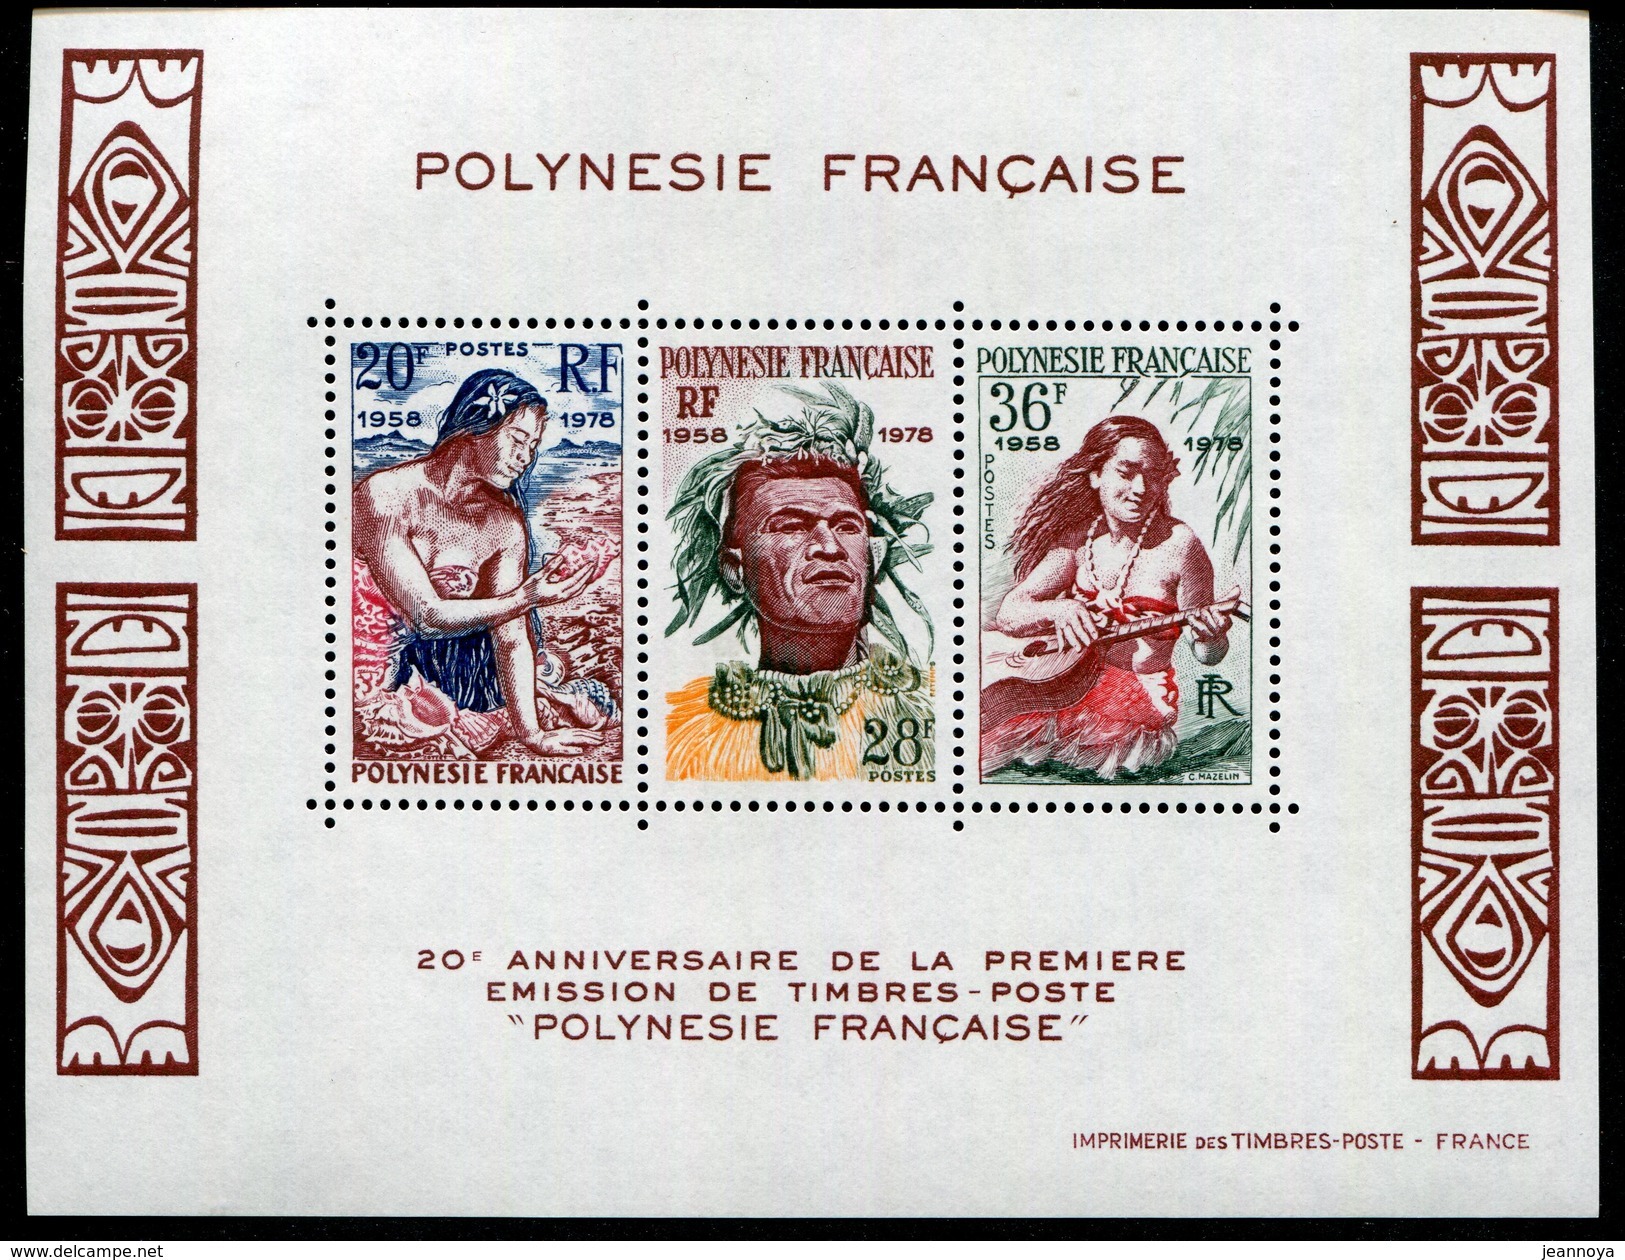 POLYNESIE FRANCAISE - BLOCS & FEUILLETS N° 4  * * - 20 ANS DE TP POLYNESIEN - LUXE - Blocchi & Foglietti